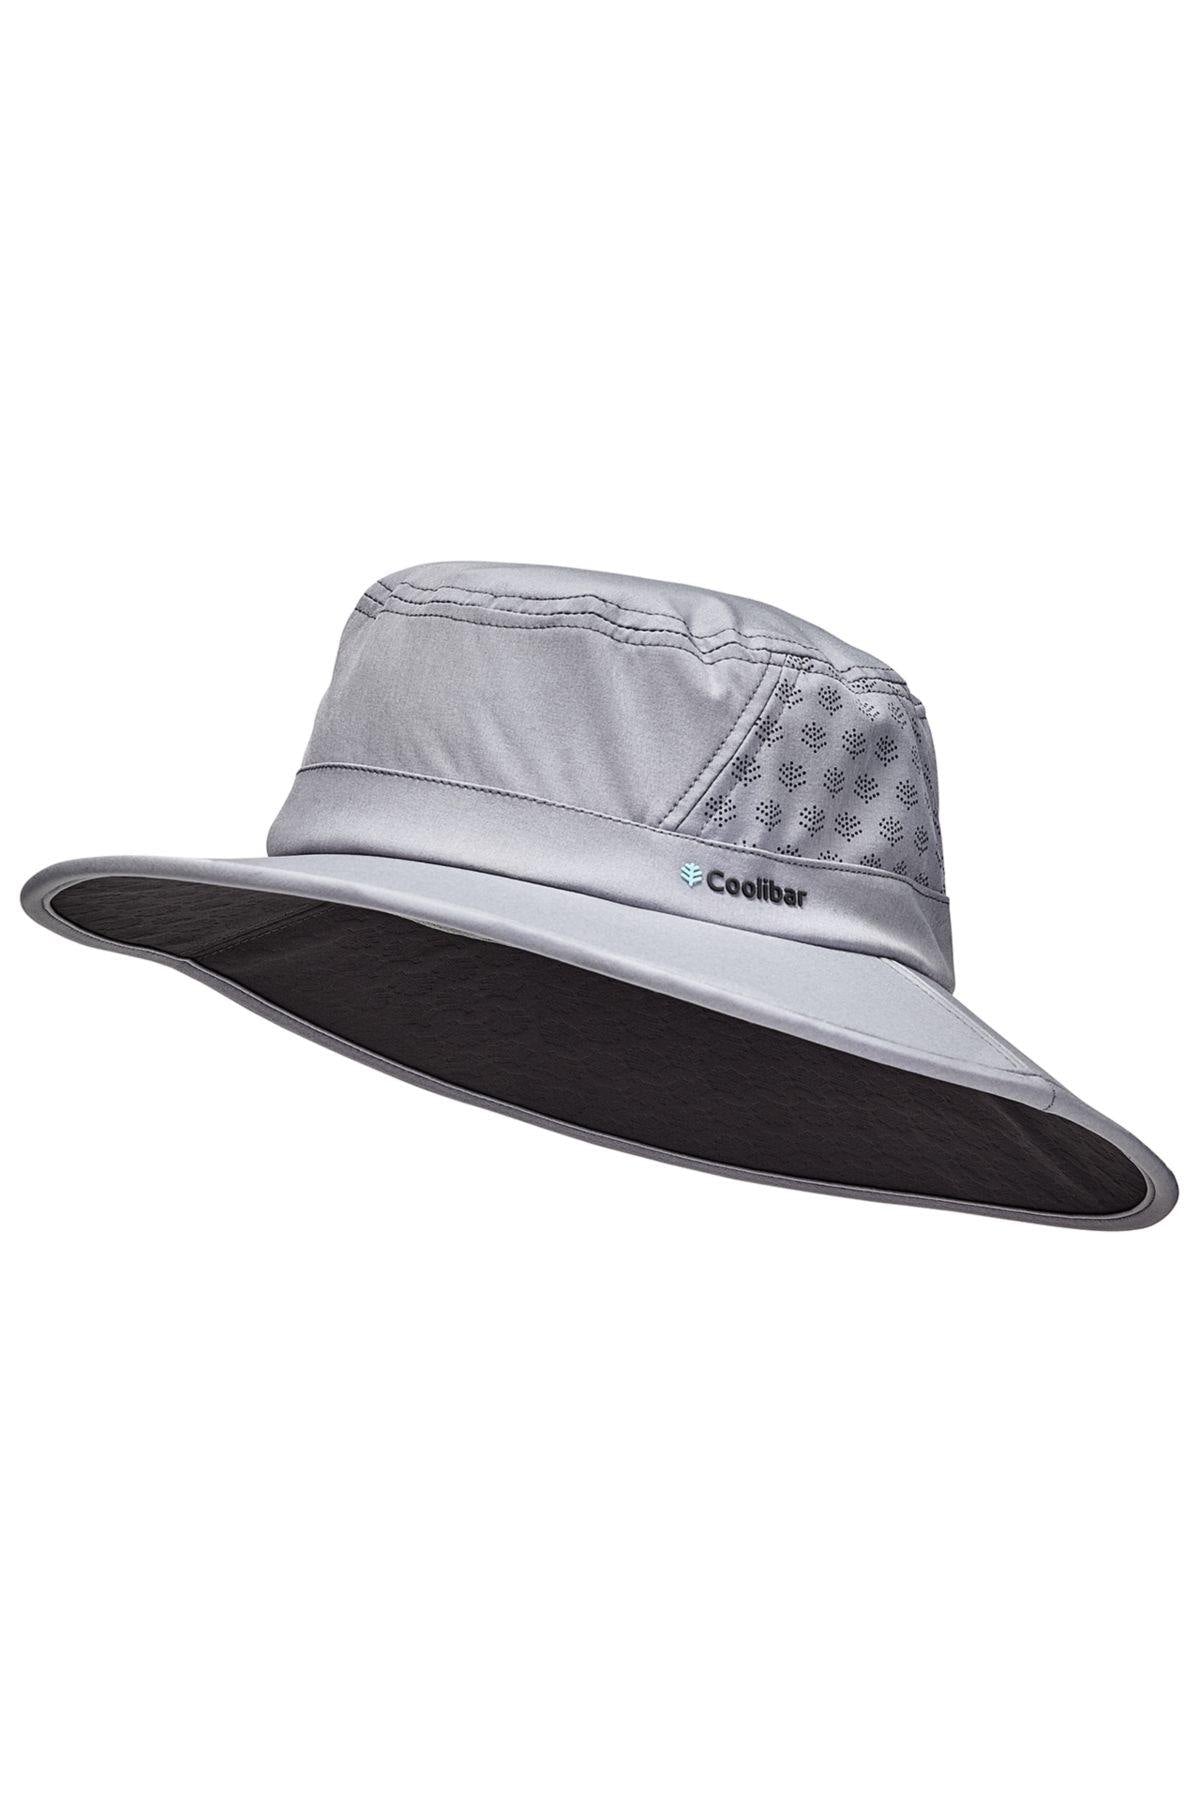 Chapeau de randonnée anti-UV pour homme (Couleur: Noir)